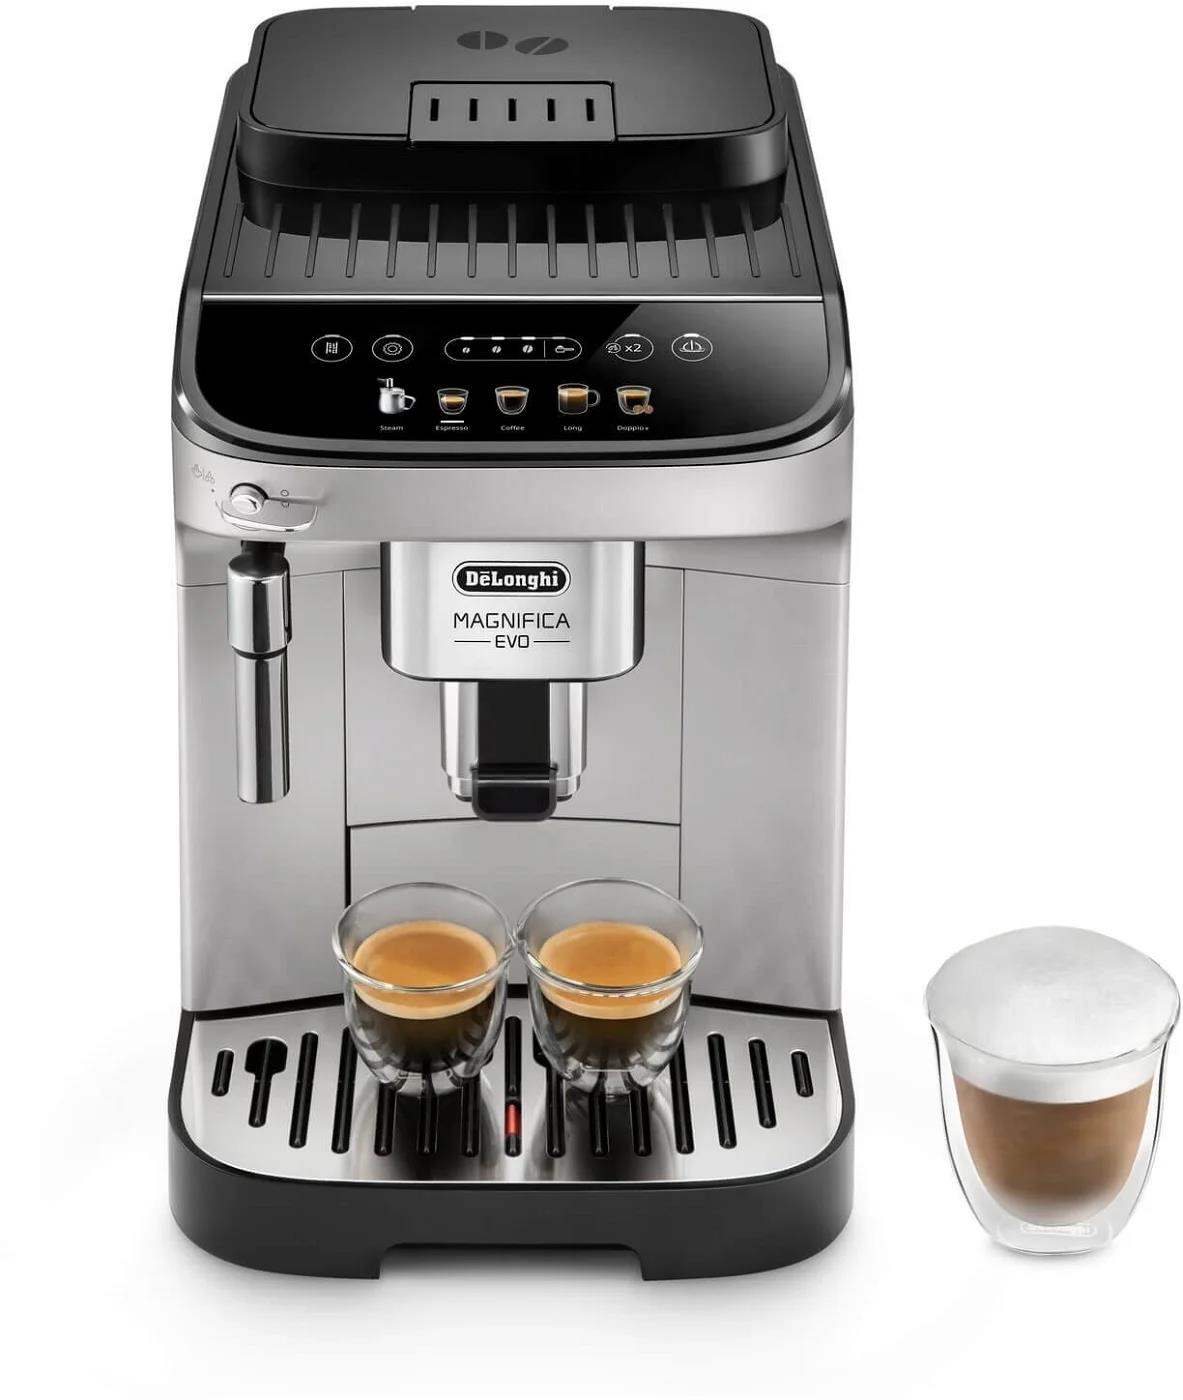 DeLonghi Magnifica Evo ECAM 290.31.SB automatický kávovar, 1450 W, 15 bar, vestavěný mlýnek, napařovací tryska1 